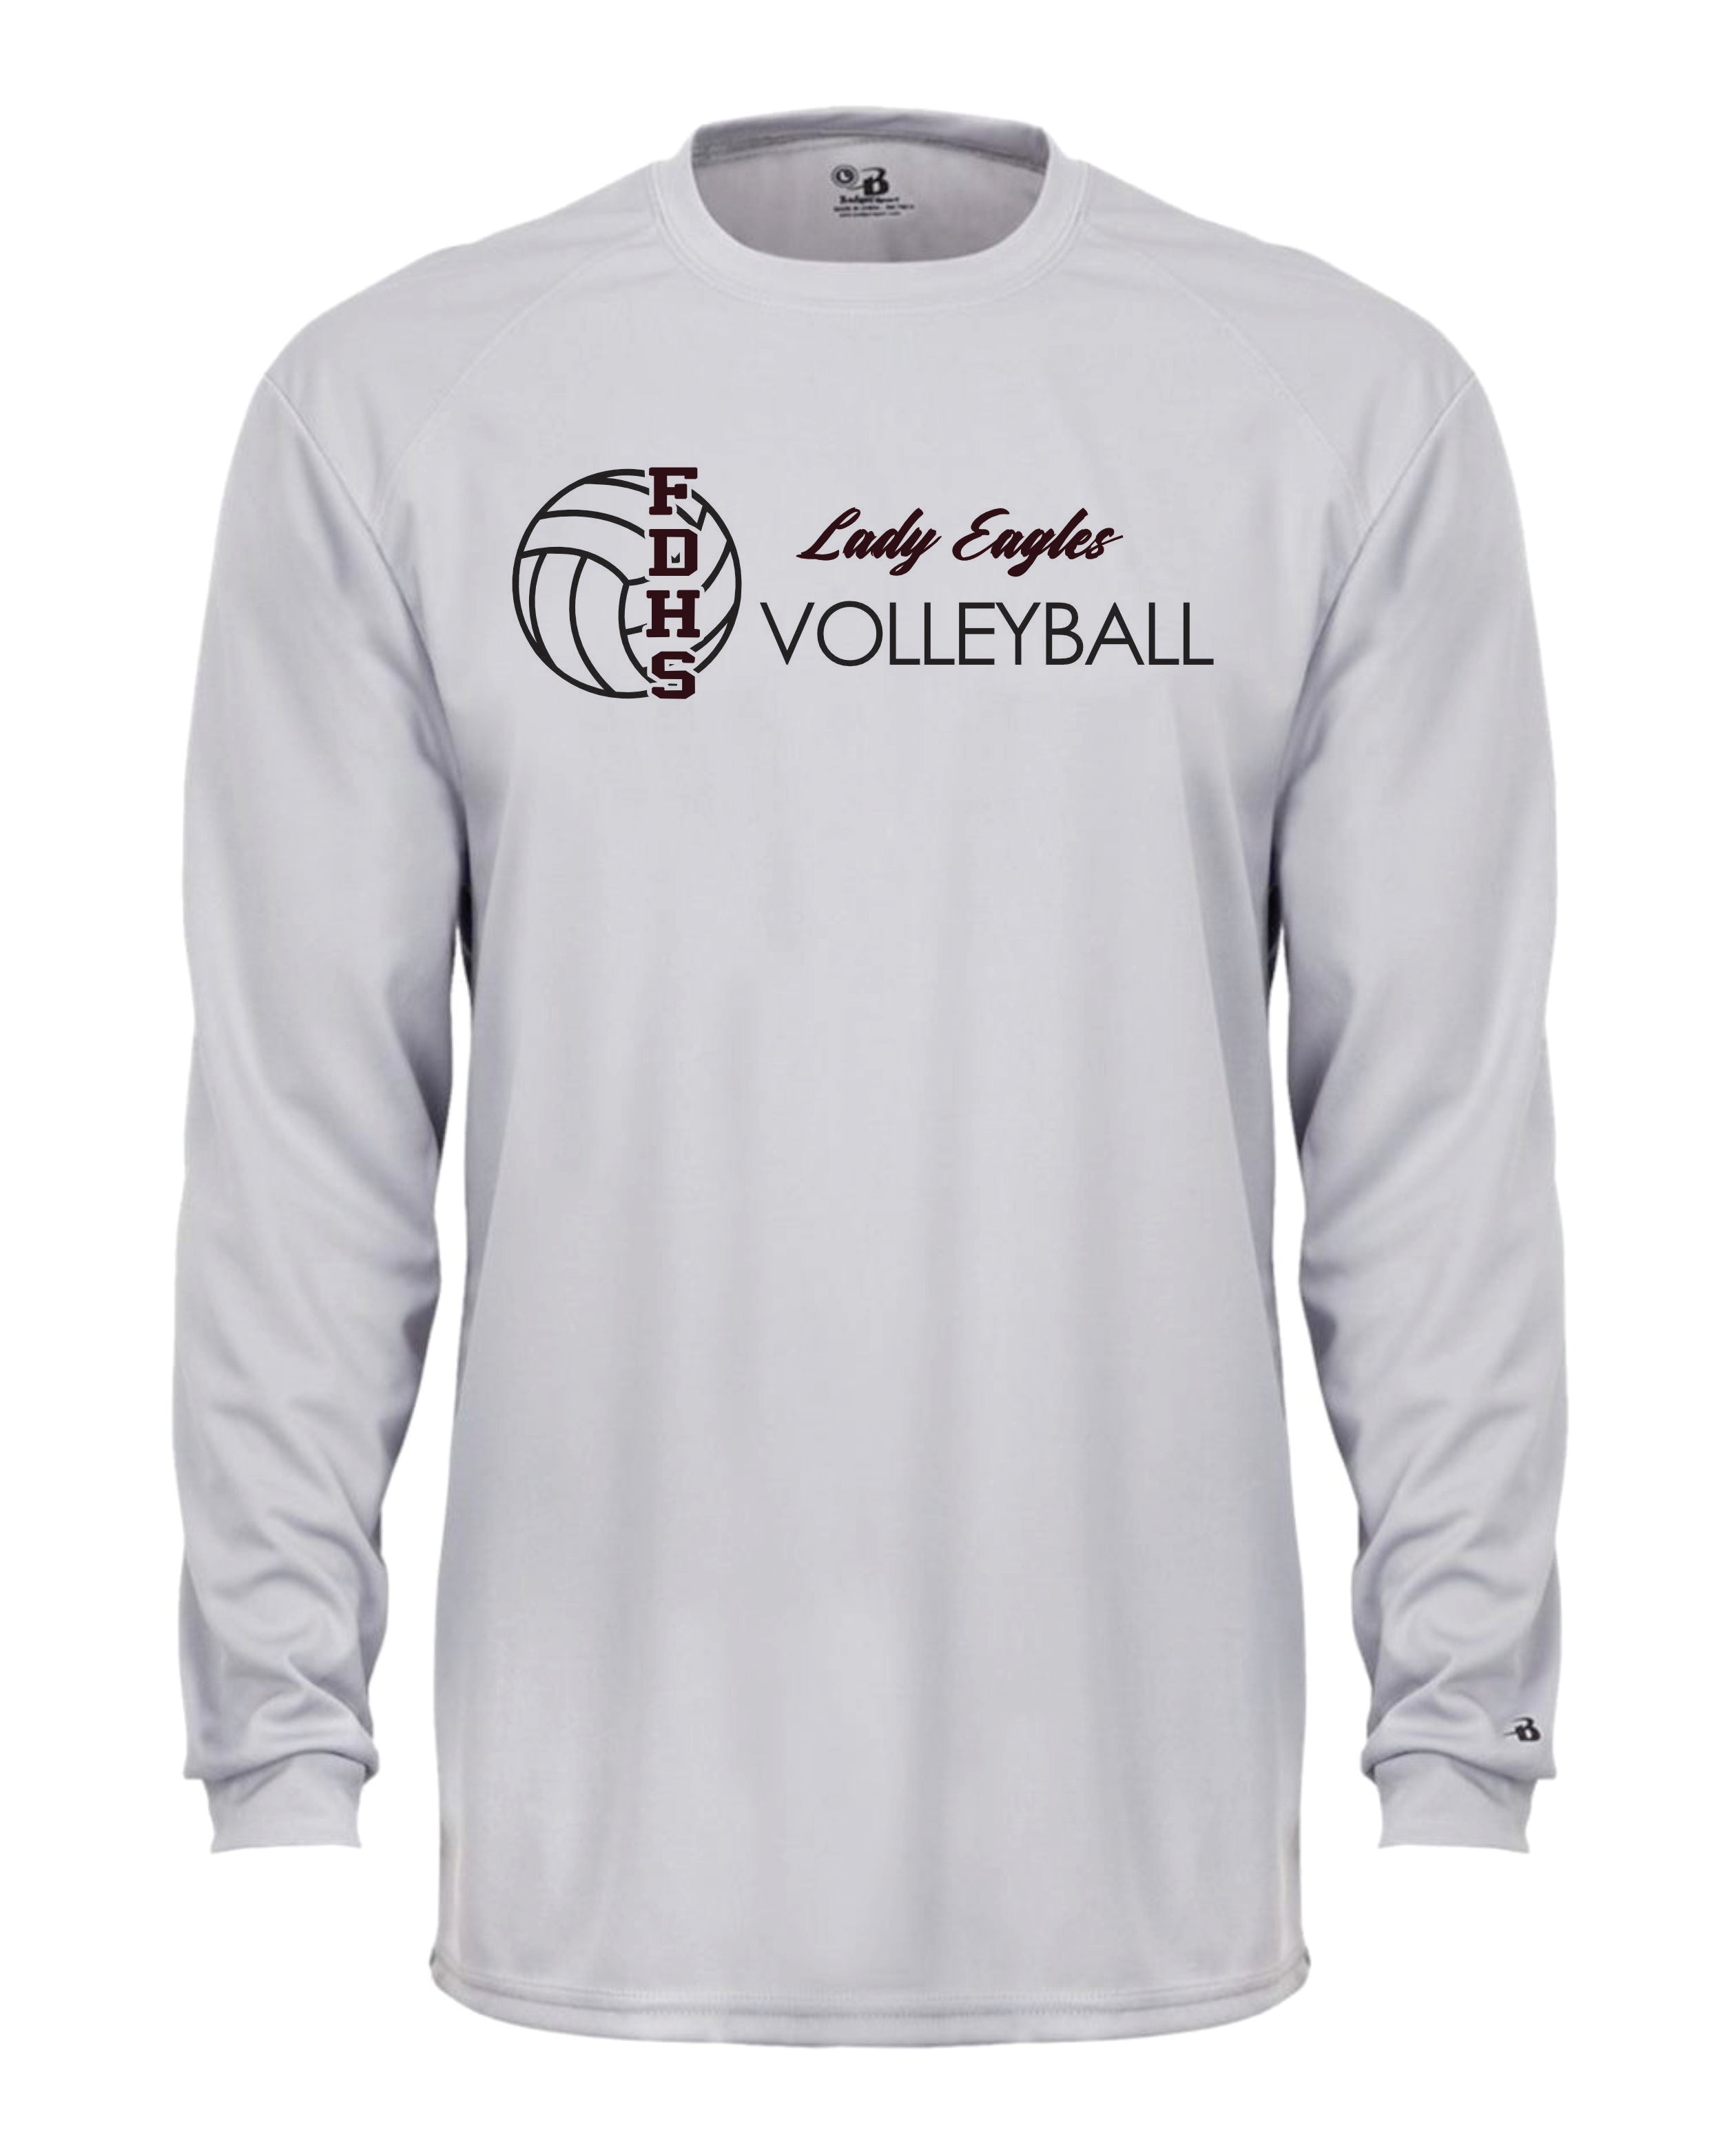 Douglass Volleyball Long Sleeve Badger  Shirt Dri Fit Shirt WOMEN